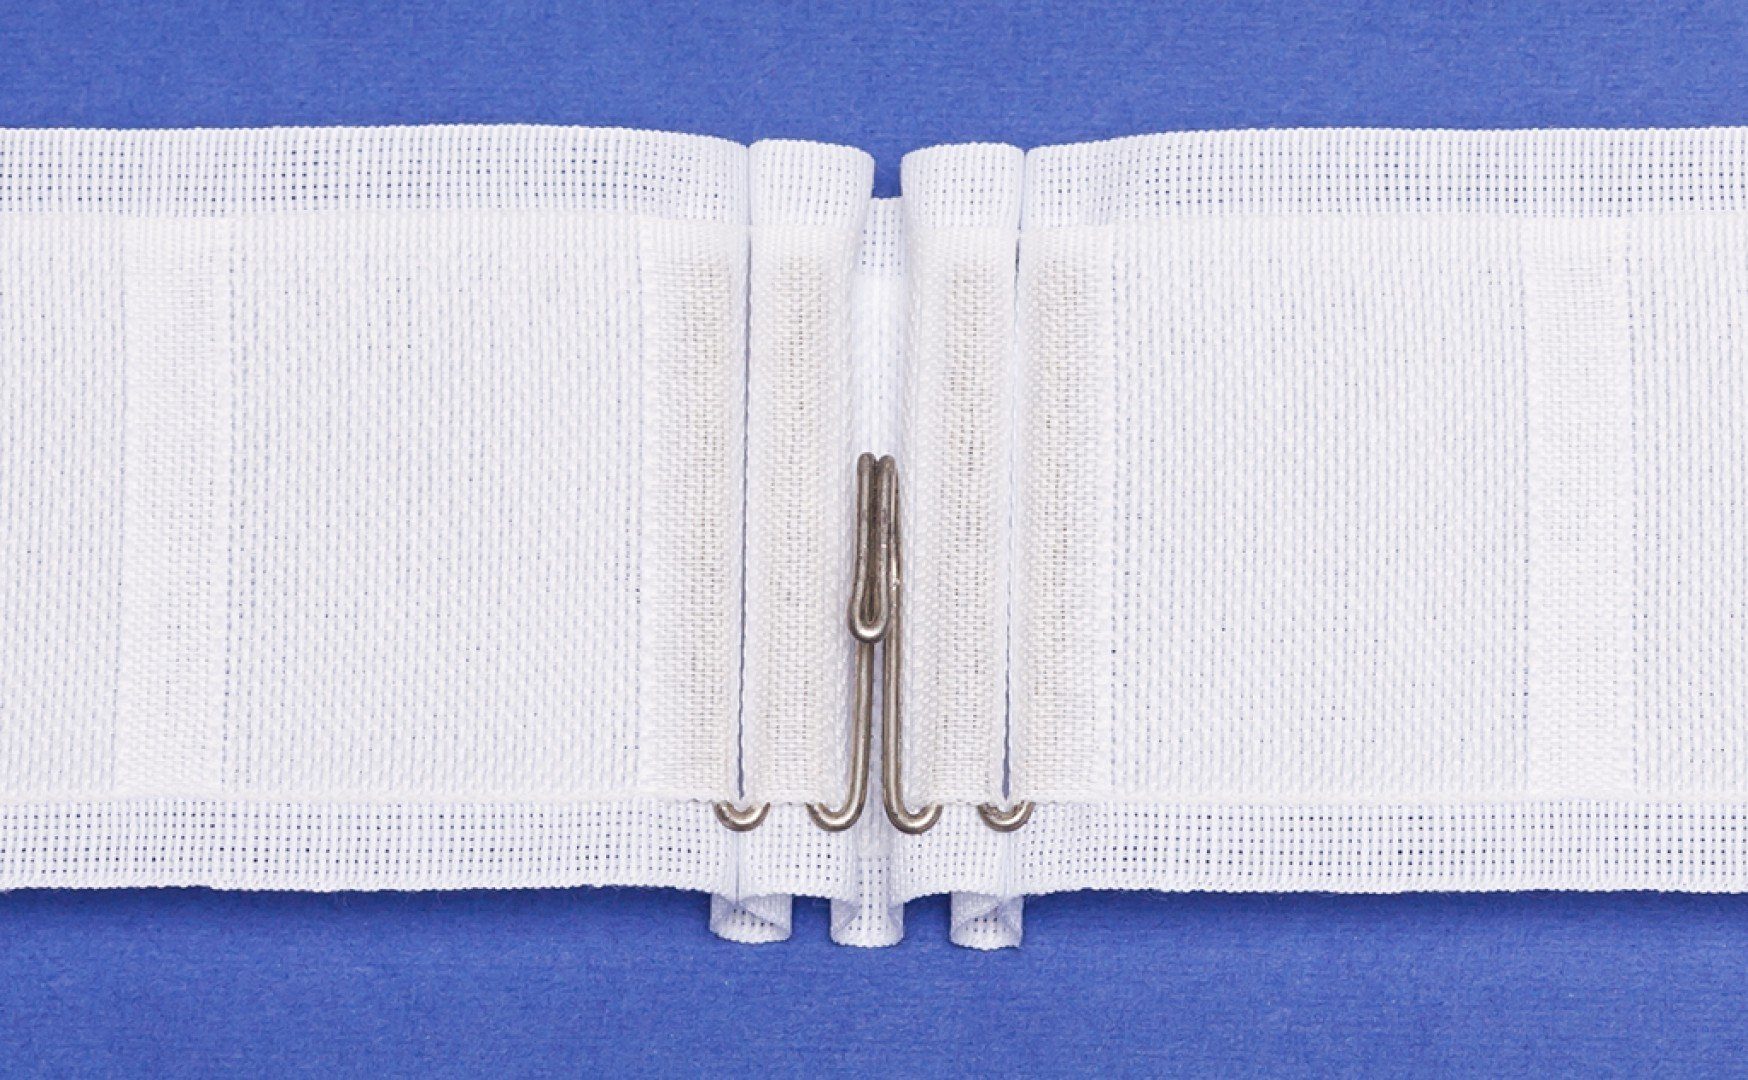 Gardine Taschenband, Gardinenband, Dekoschals - Variabel / Breite: 70mm / Farbe: weiß - L131, rewagi, Verkaufseinheit: 5 Meter